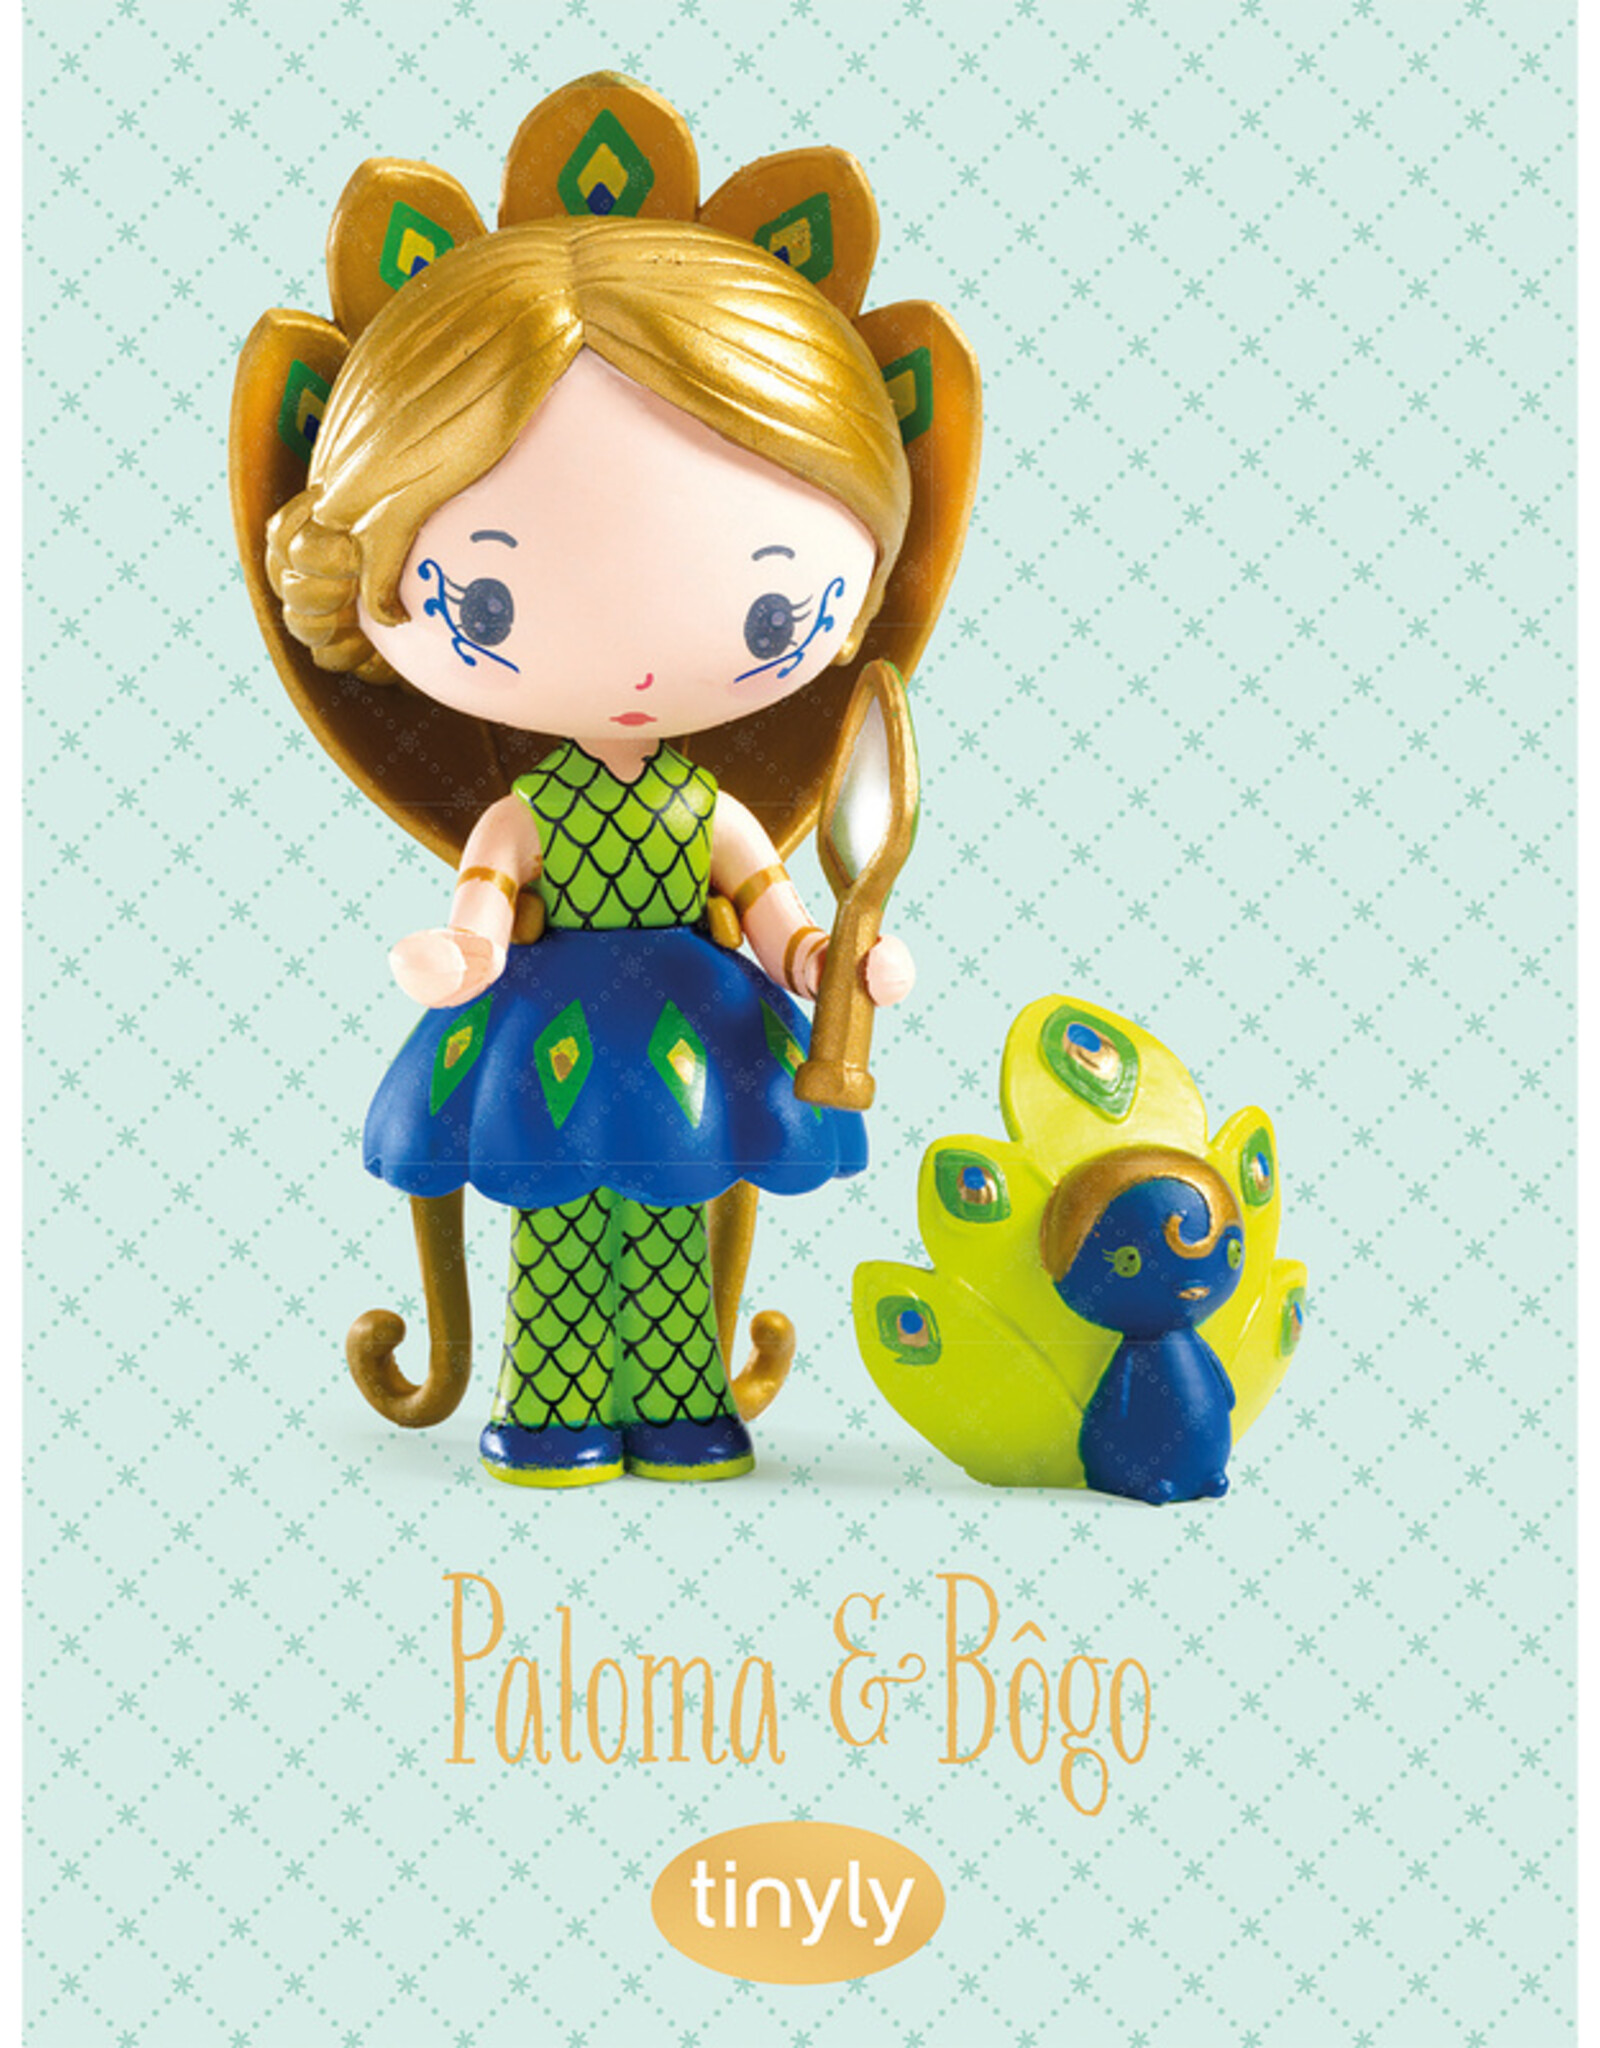 Tinyly- Paloma & Bogo